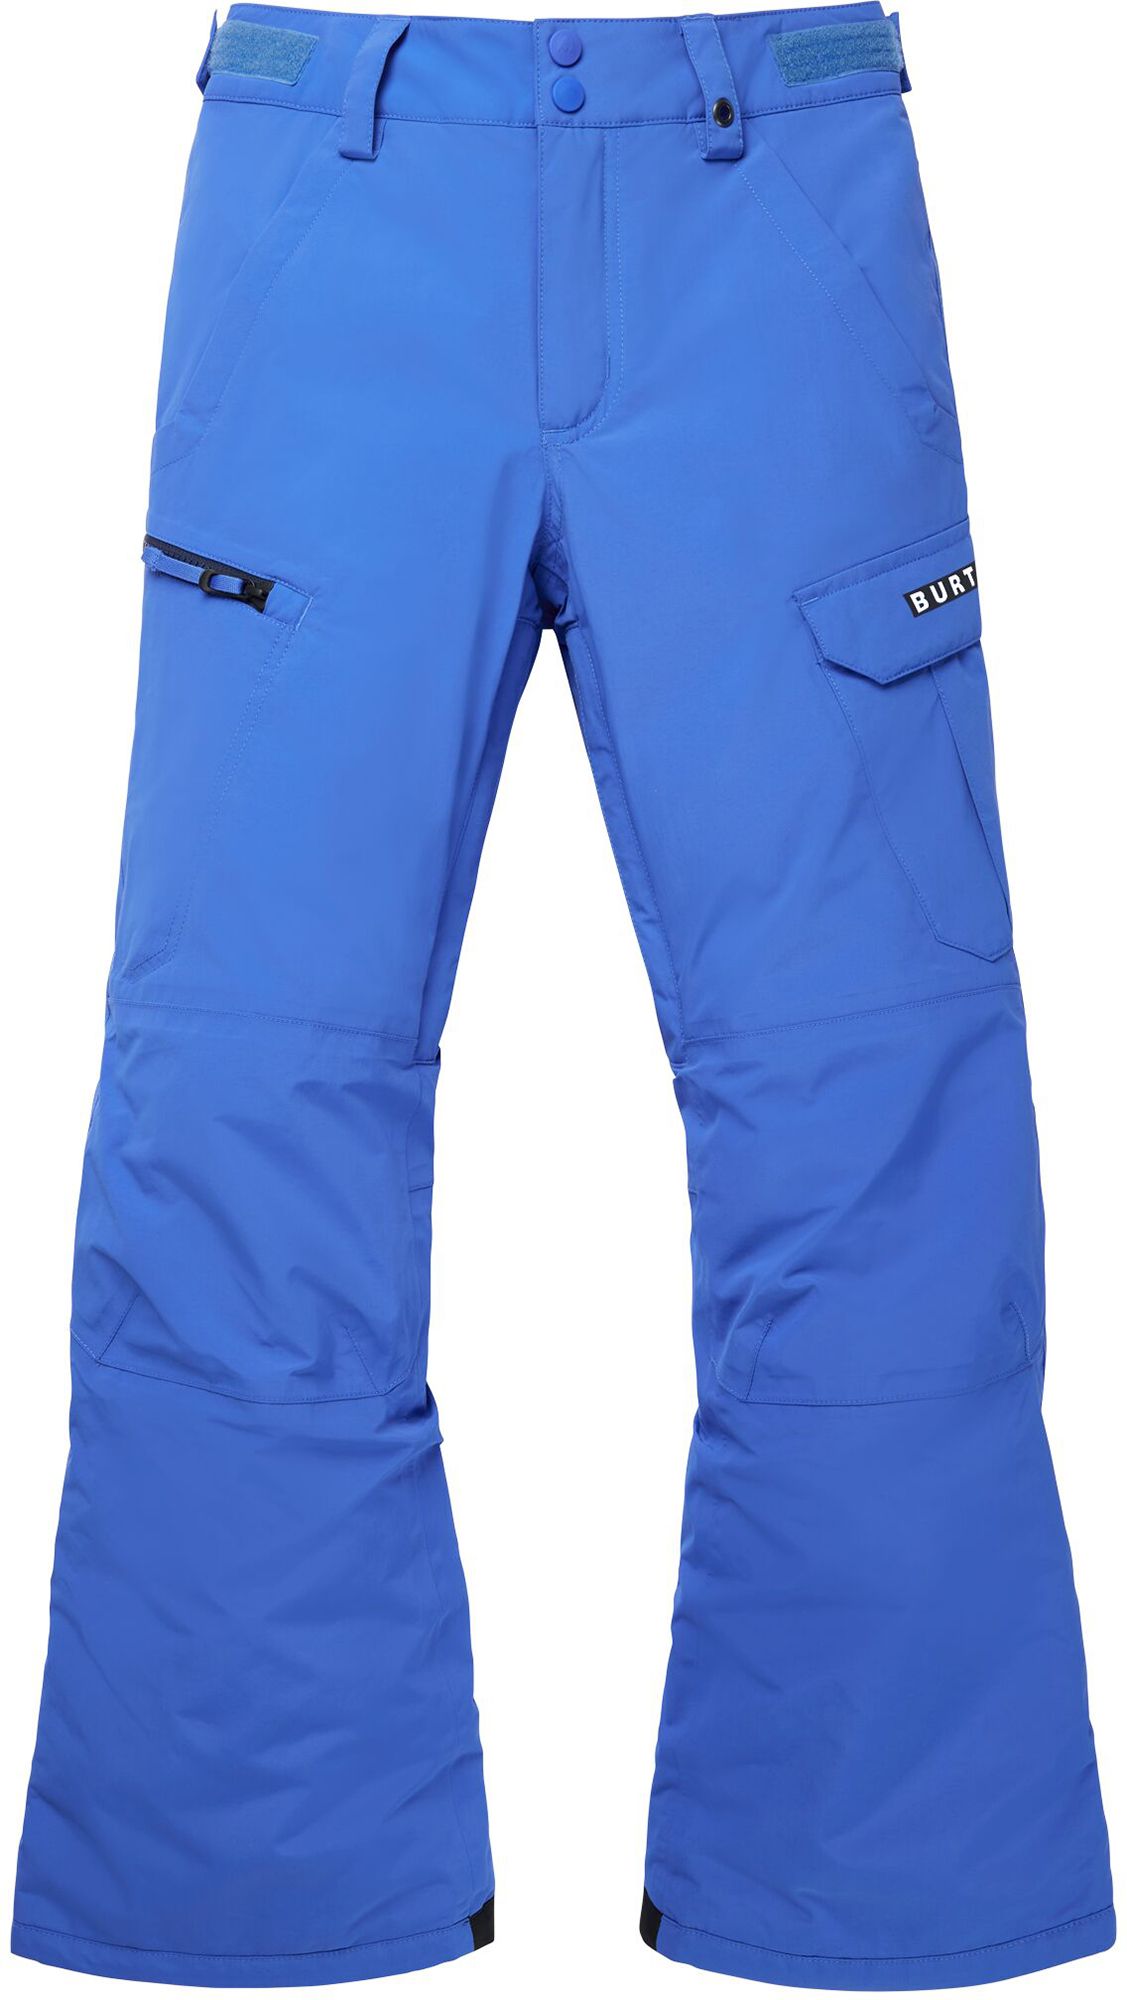 Photos - Ski Wear Burton Boys' Exile Cargo Pants, Medium, Amparo Blue 21BRTBBXLCRGPNTXXAPO 